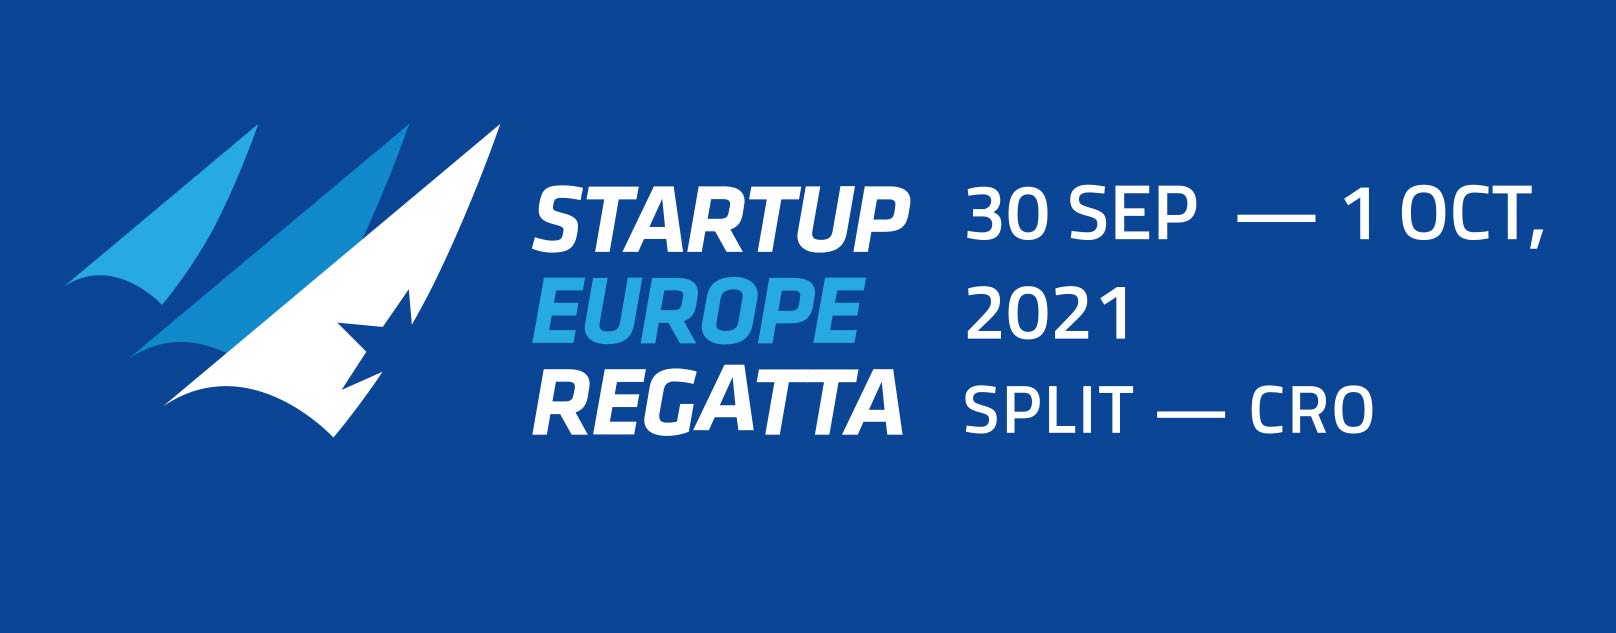 startup-europe-regatta-2021